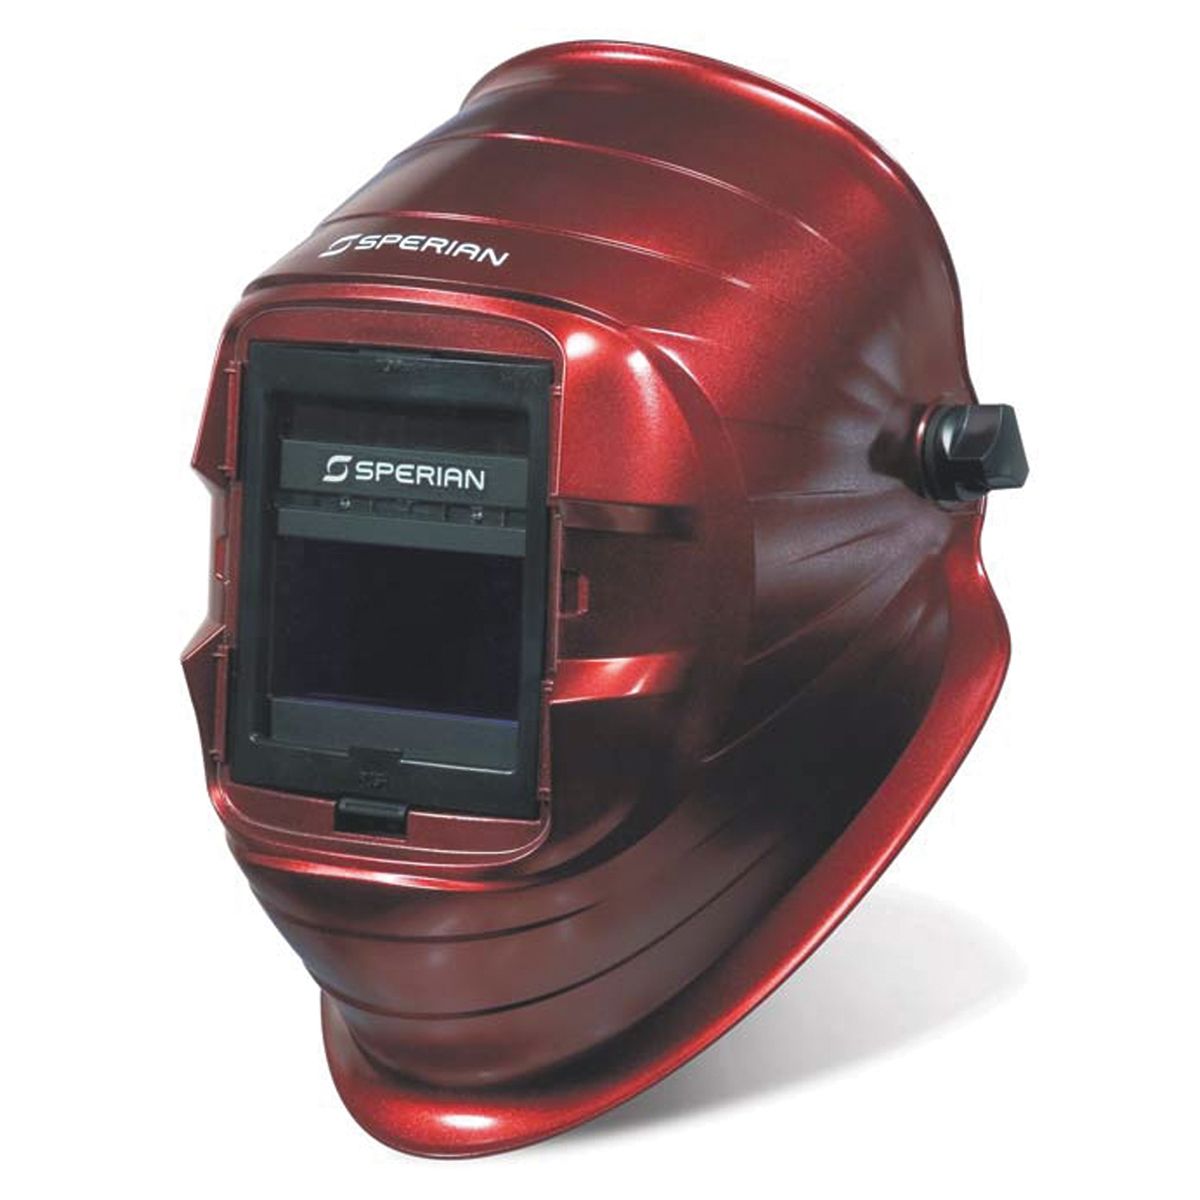 optrel panoramaxx welding helmet review